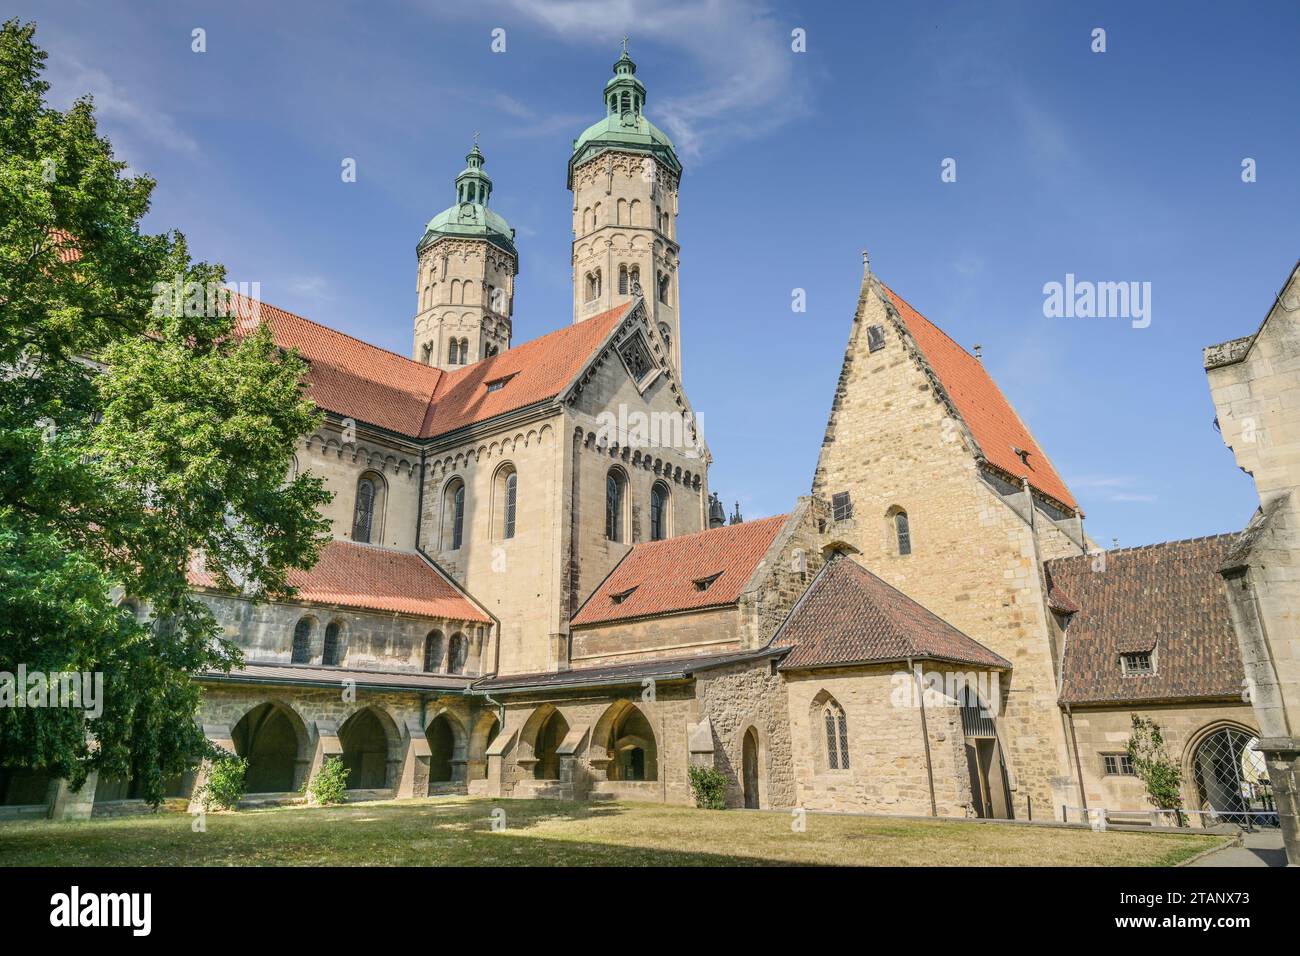 Dom St Peter und Paul, Ansicht vom Innenhof, Domplatz, Naumburg, Sachsen-Anhalt, Deutschland Foto Stock